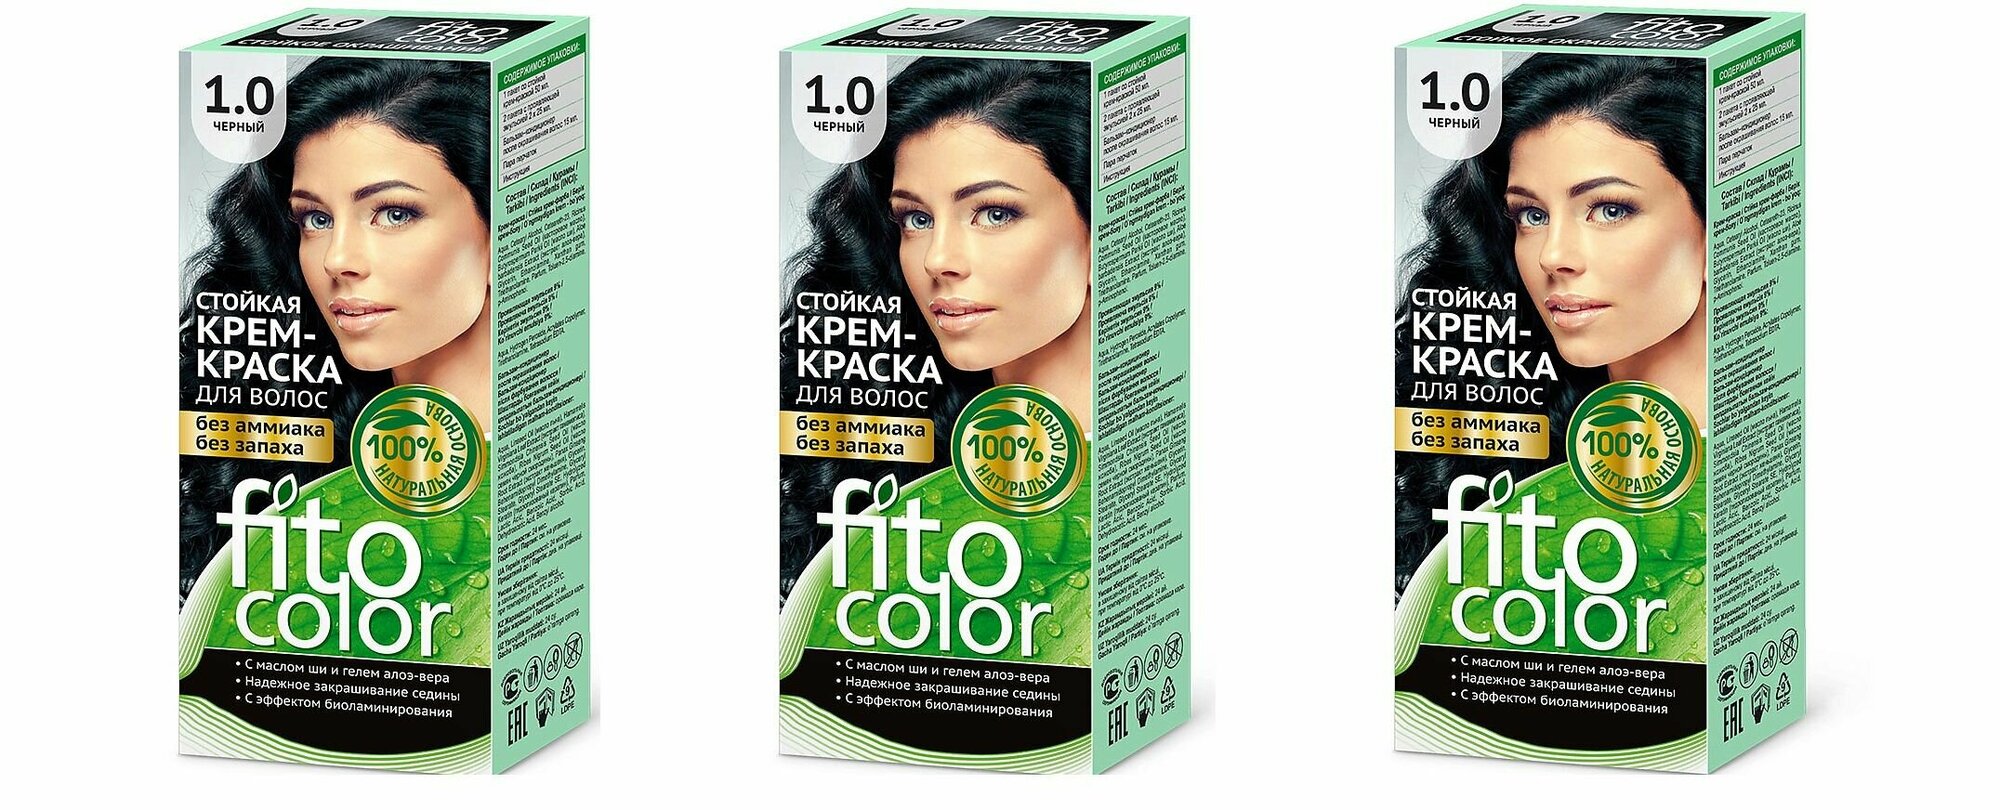 Fito Косметик Стойкая крем-краска для волос серии Fitocolor, тон 1.0, черный, 115 мл, 3 шт